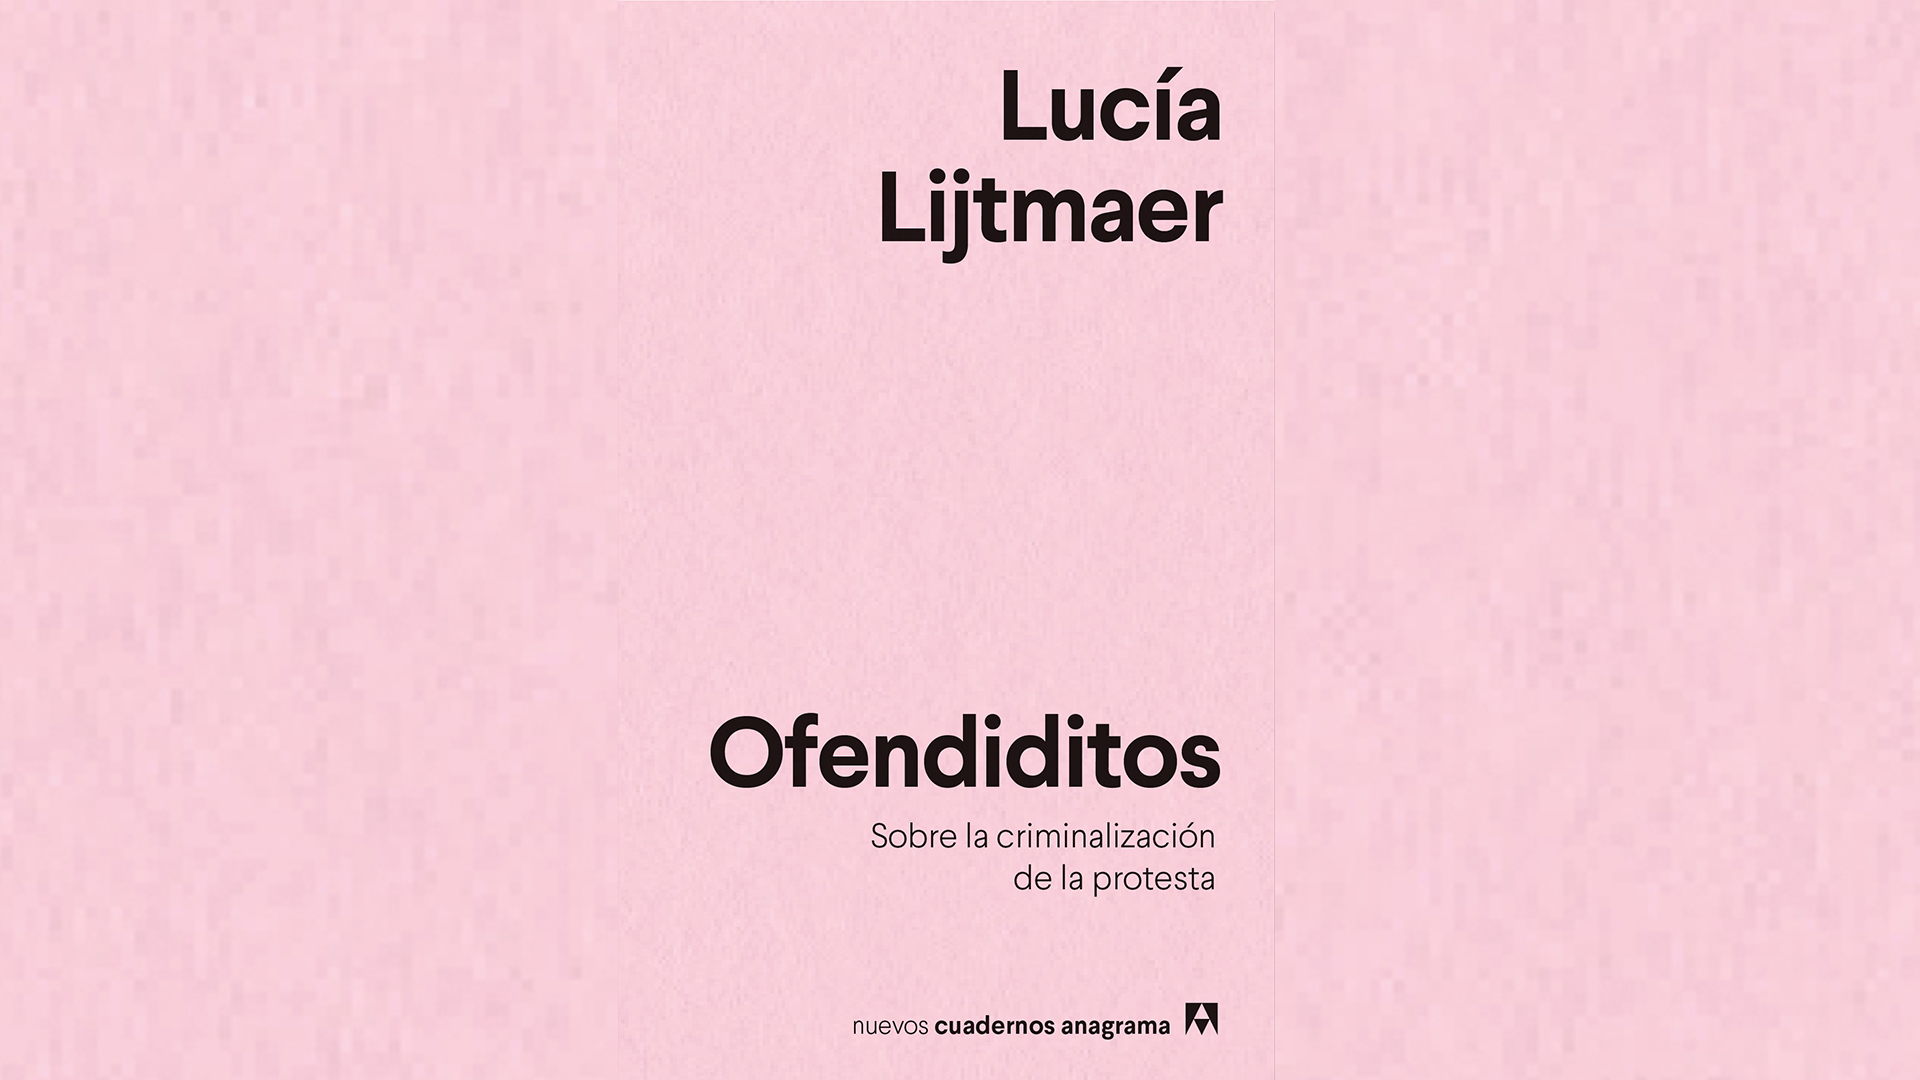 El libro "Ofendiditos", de Lucía Lijtmaer, va por su séptima edición en España